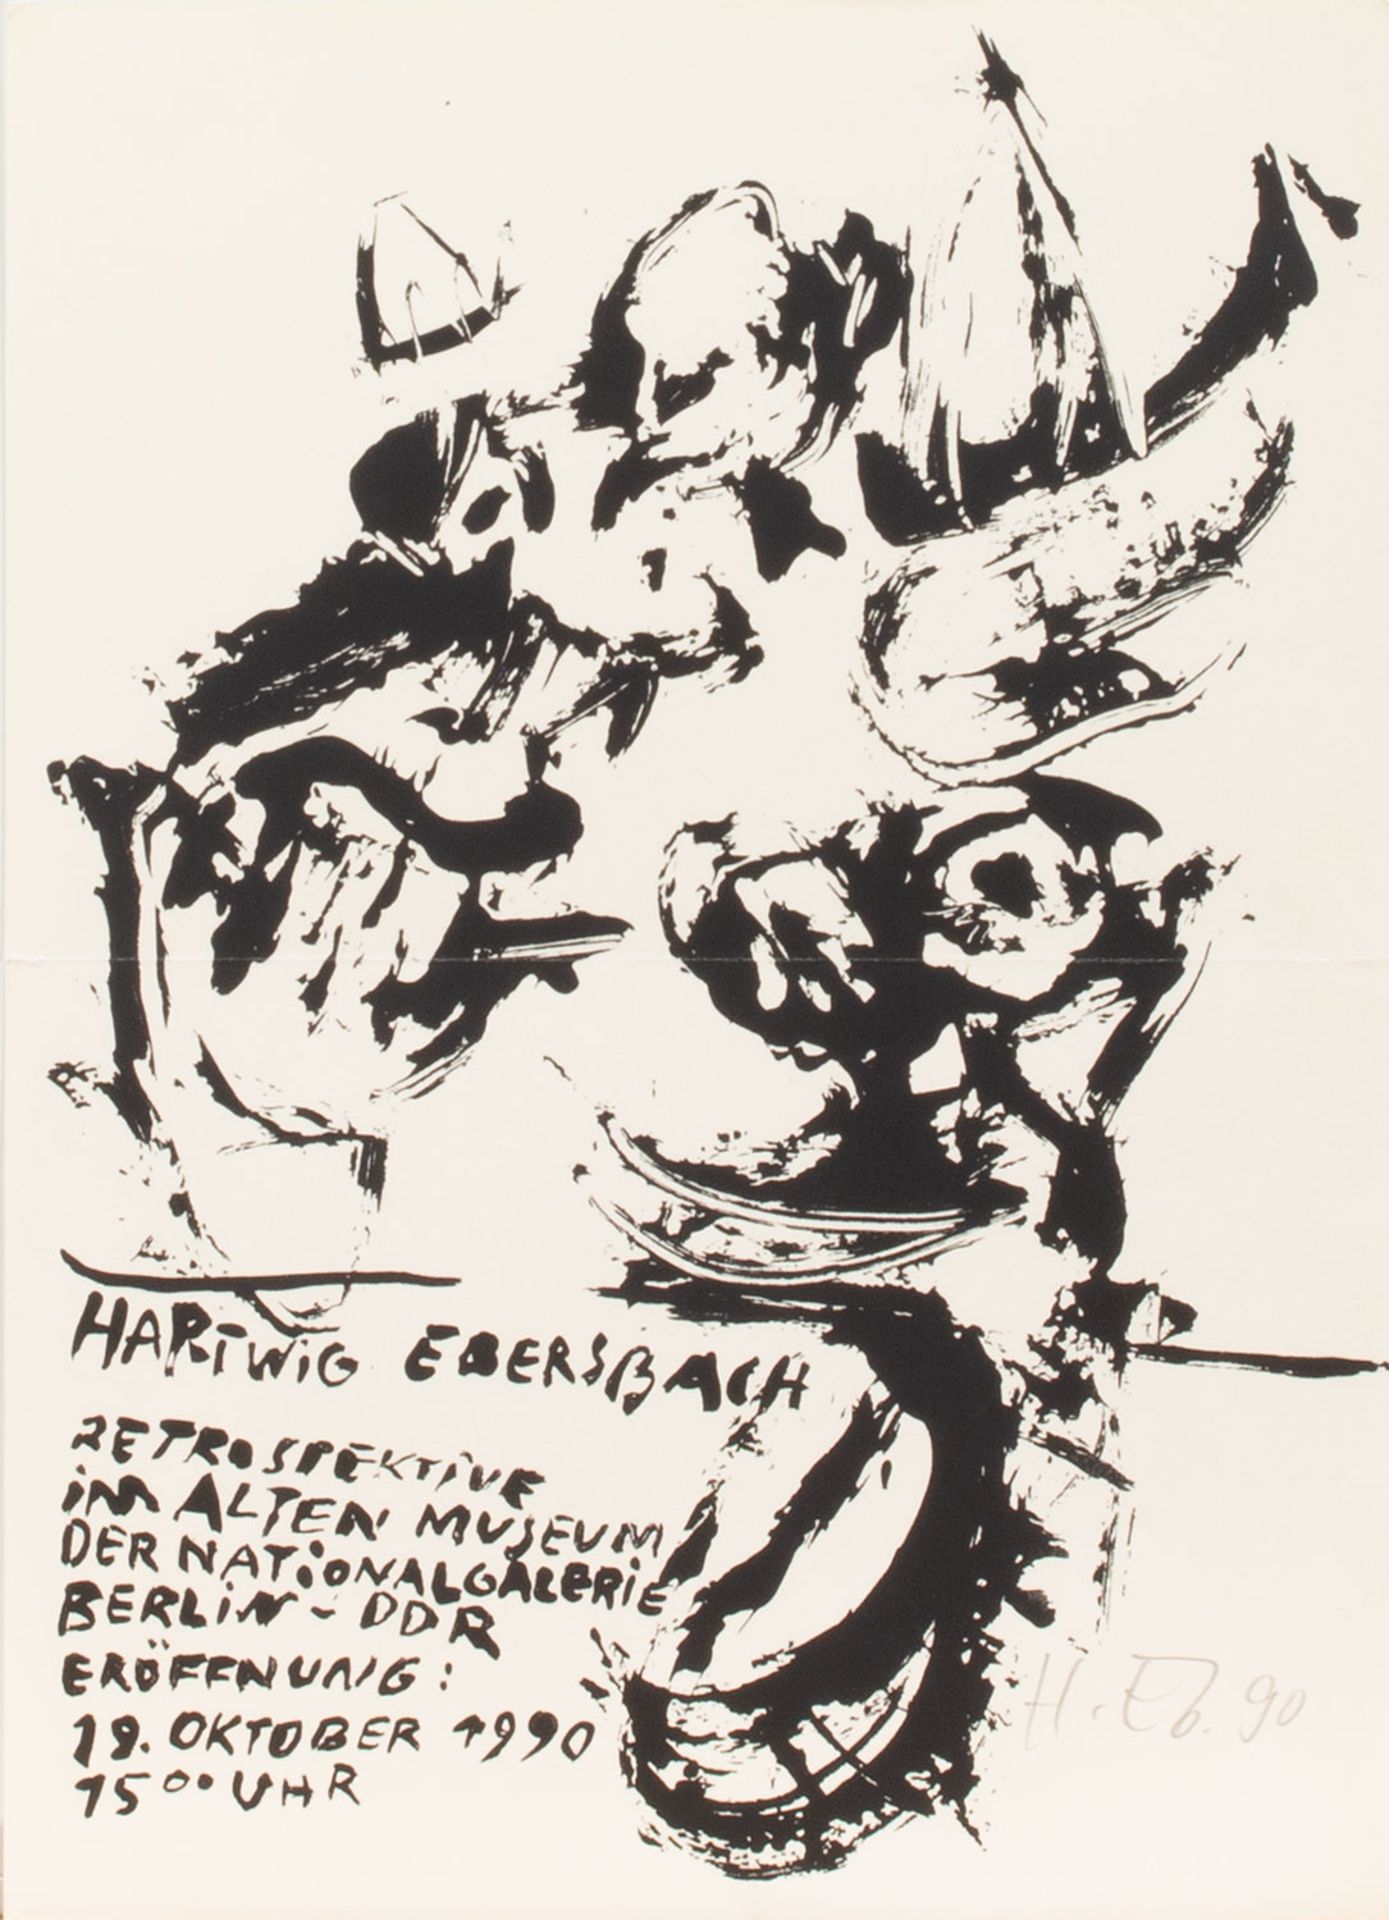 Hartwig Ebersbach